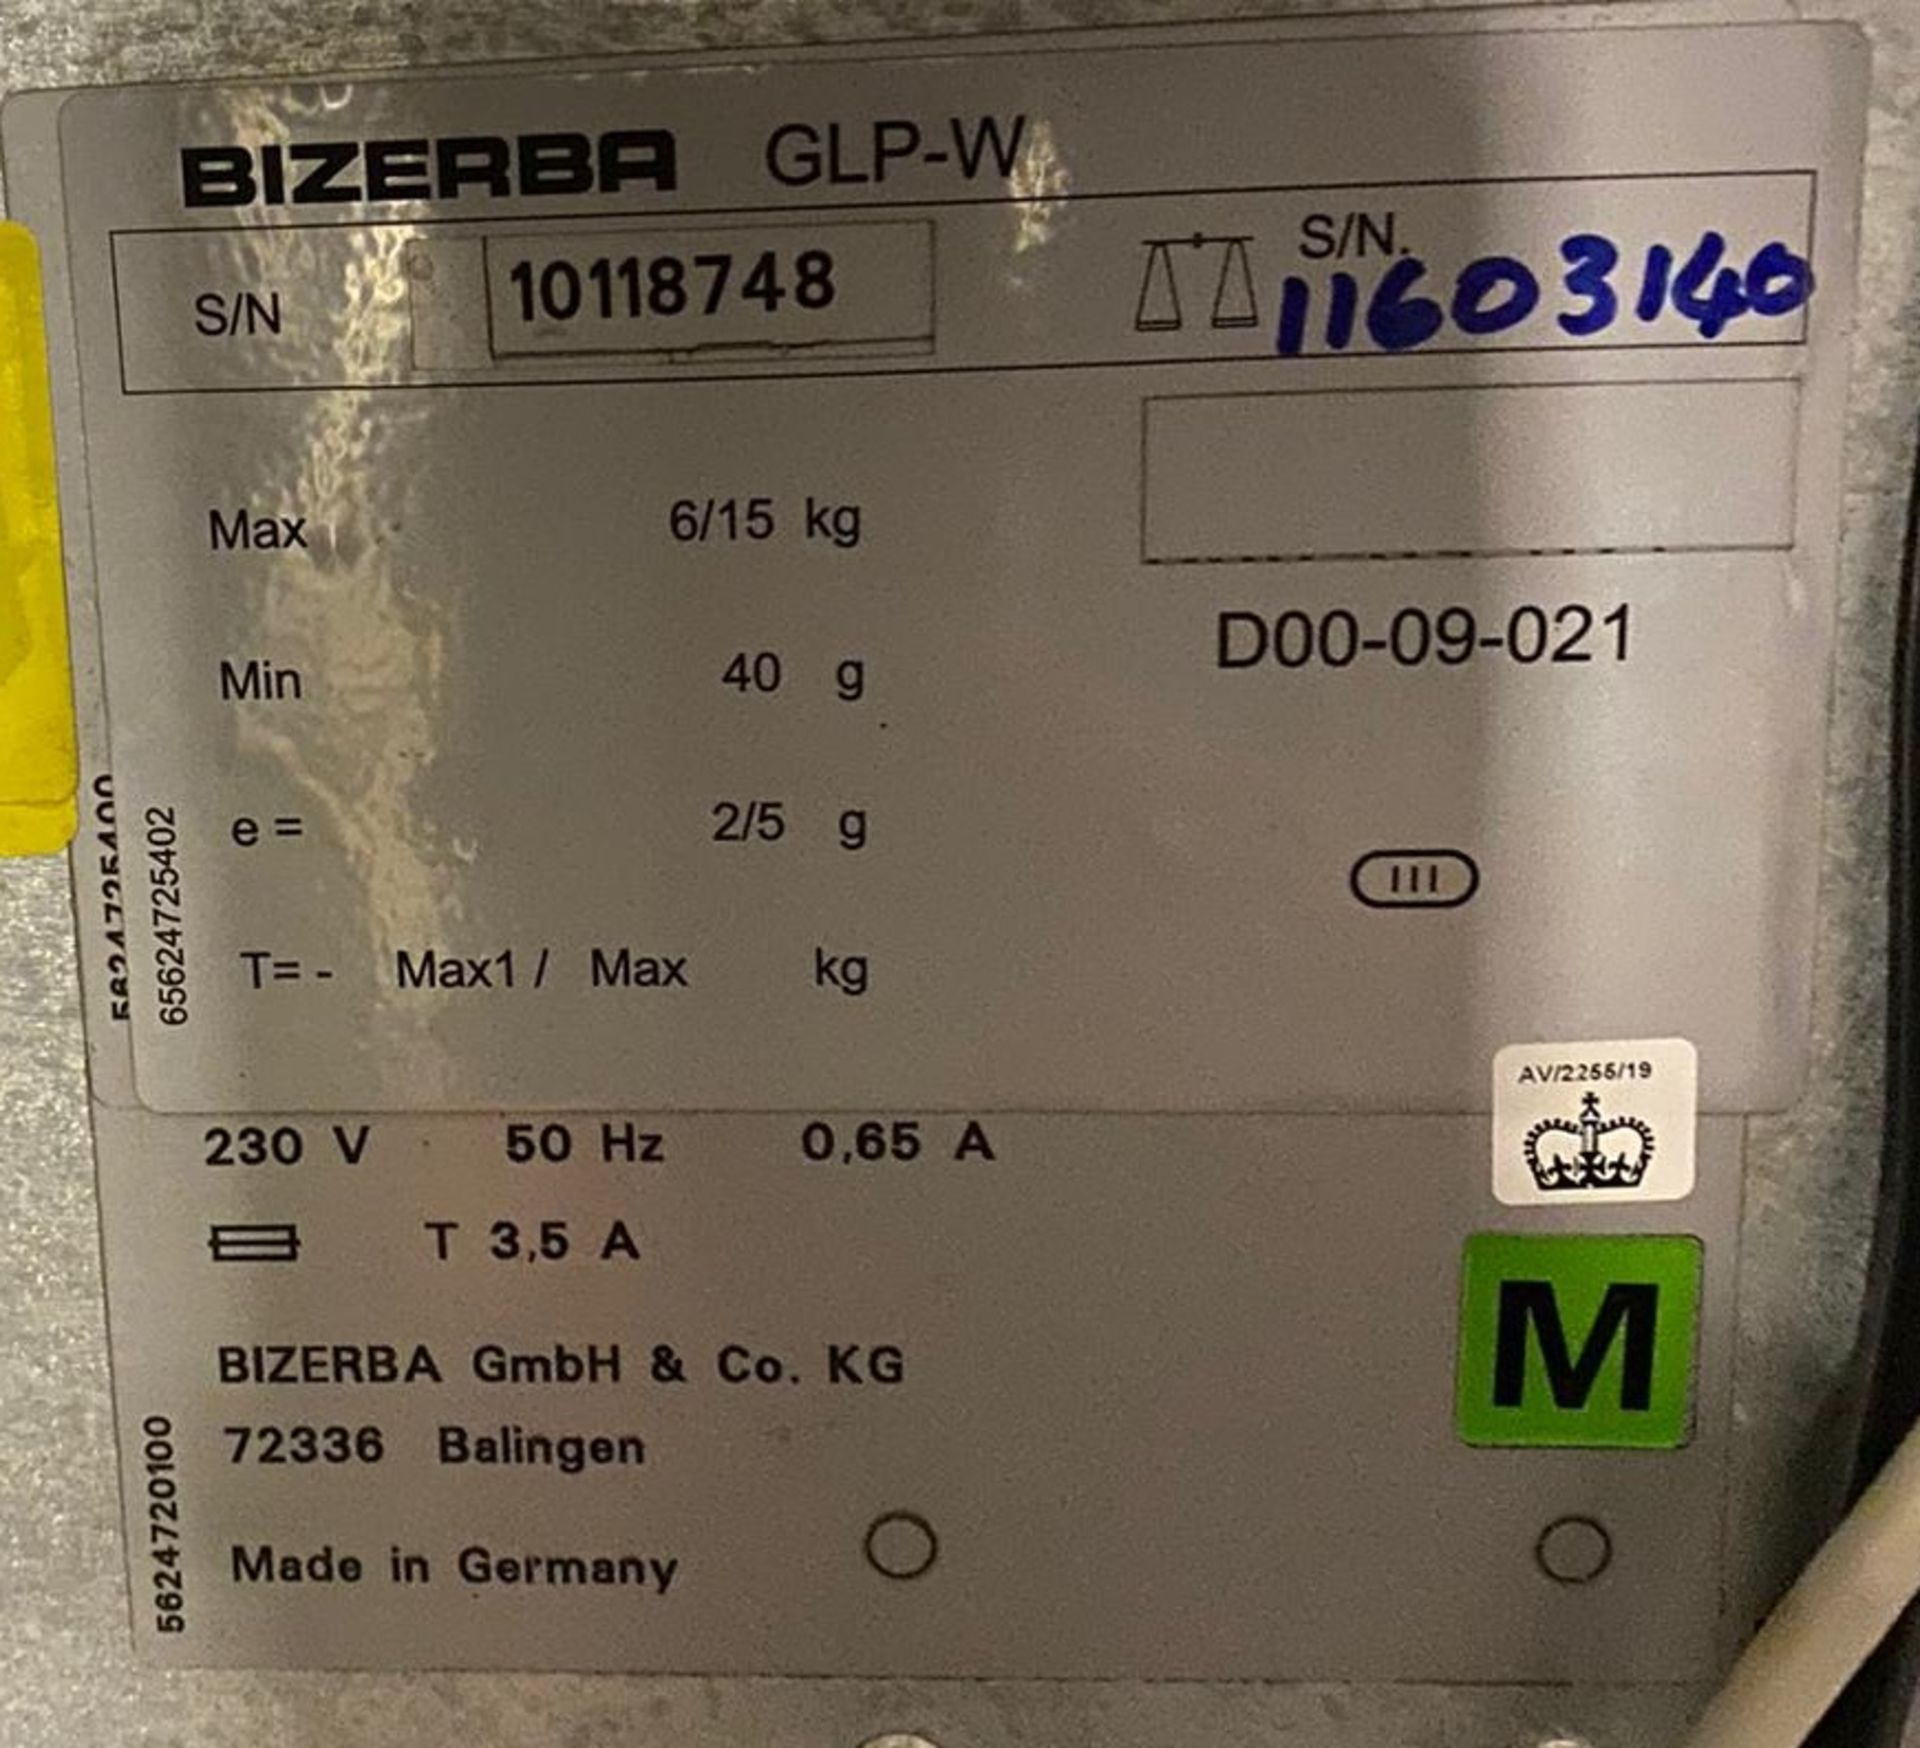 1 x Bizerba GT240 Retail Label printer - Used Conditon - Location: Altrincham WA14 - - Image 4 of 8